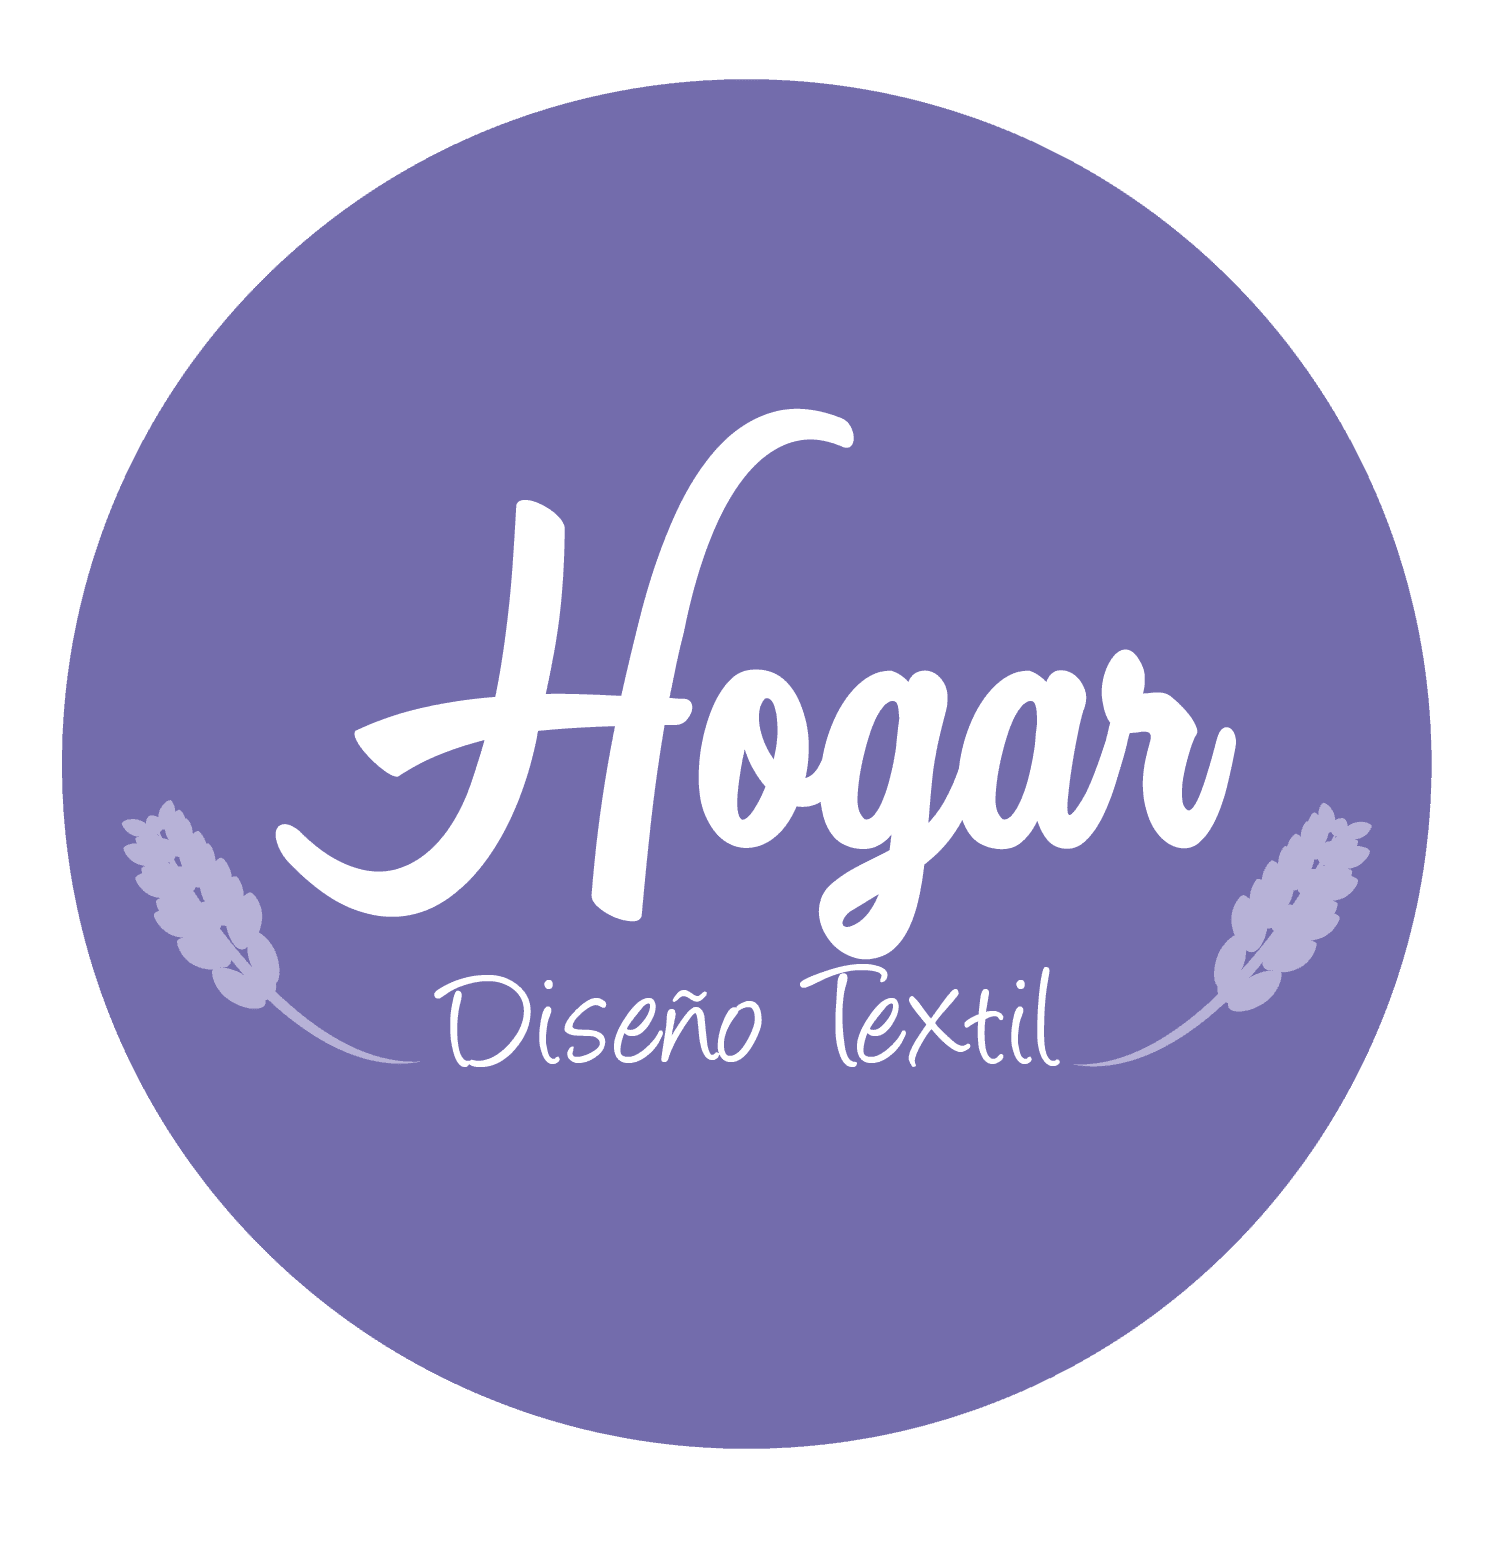 Diseño Textil Hogar